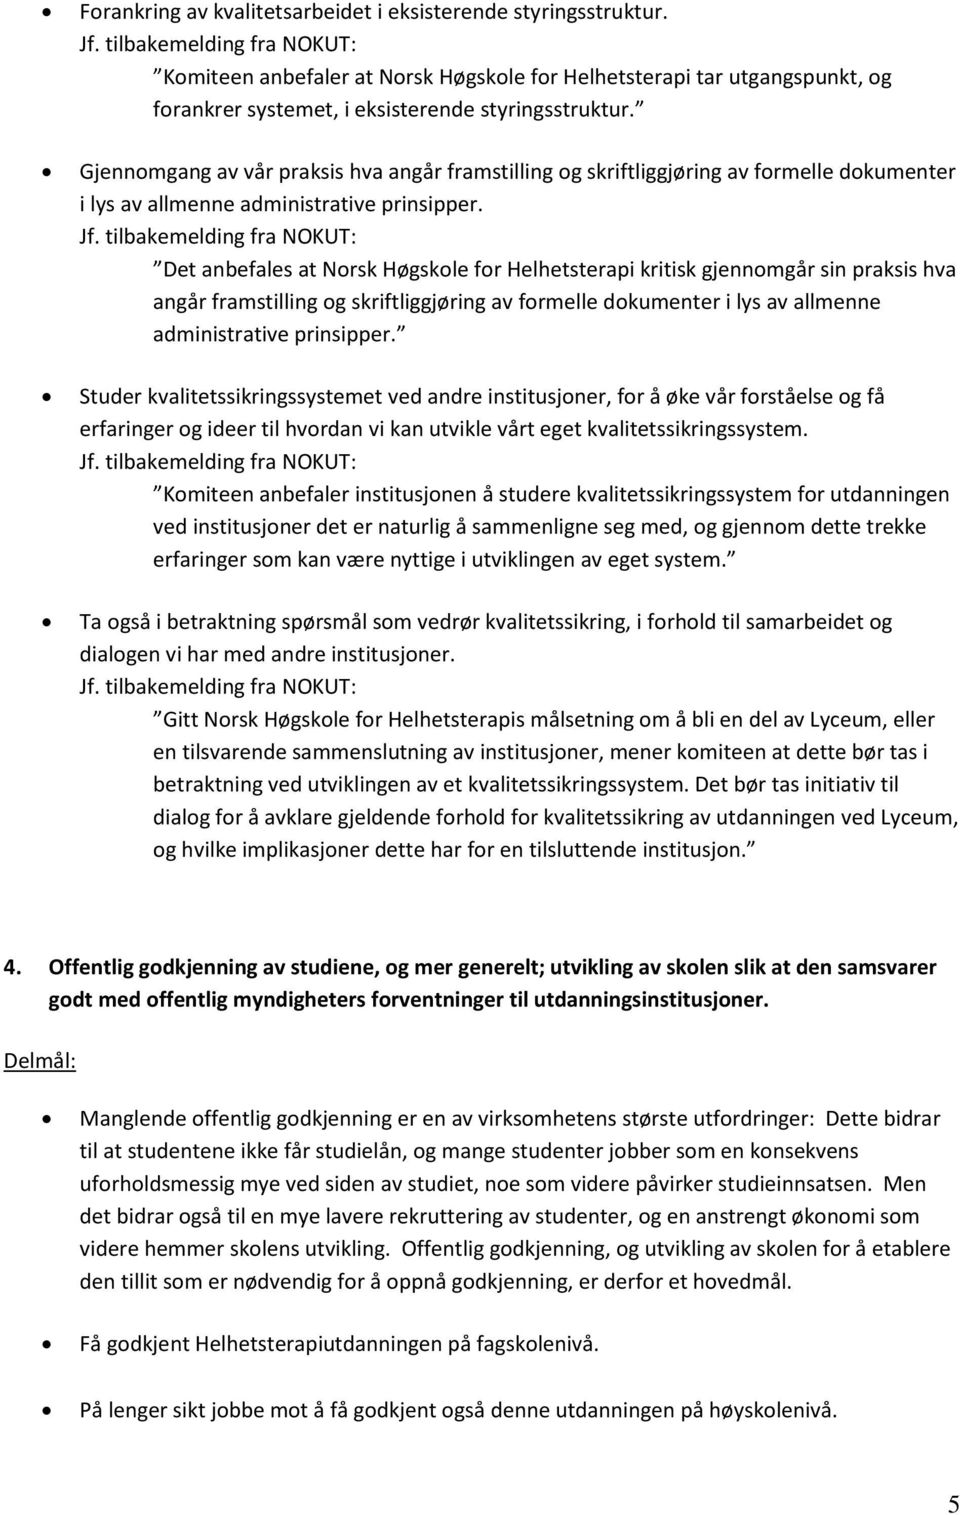 Det anbefales at Norsk Høgskole for Helhetsterapi kritisk gjennomgår sin praksis hva angår framstilling og skriftliggjøring av formelle dokumenter i lys av allmenne administrative prinsipper.